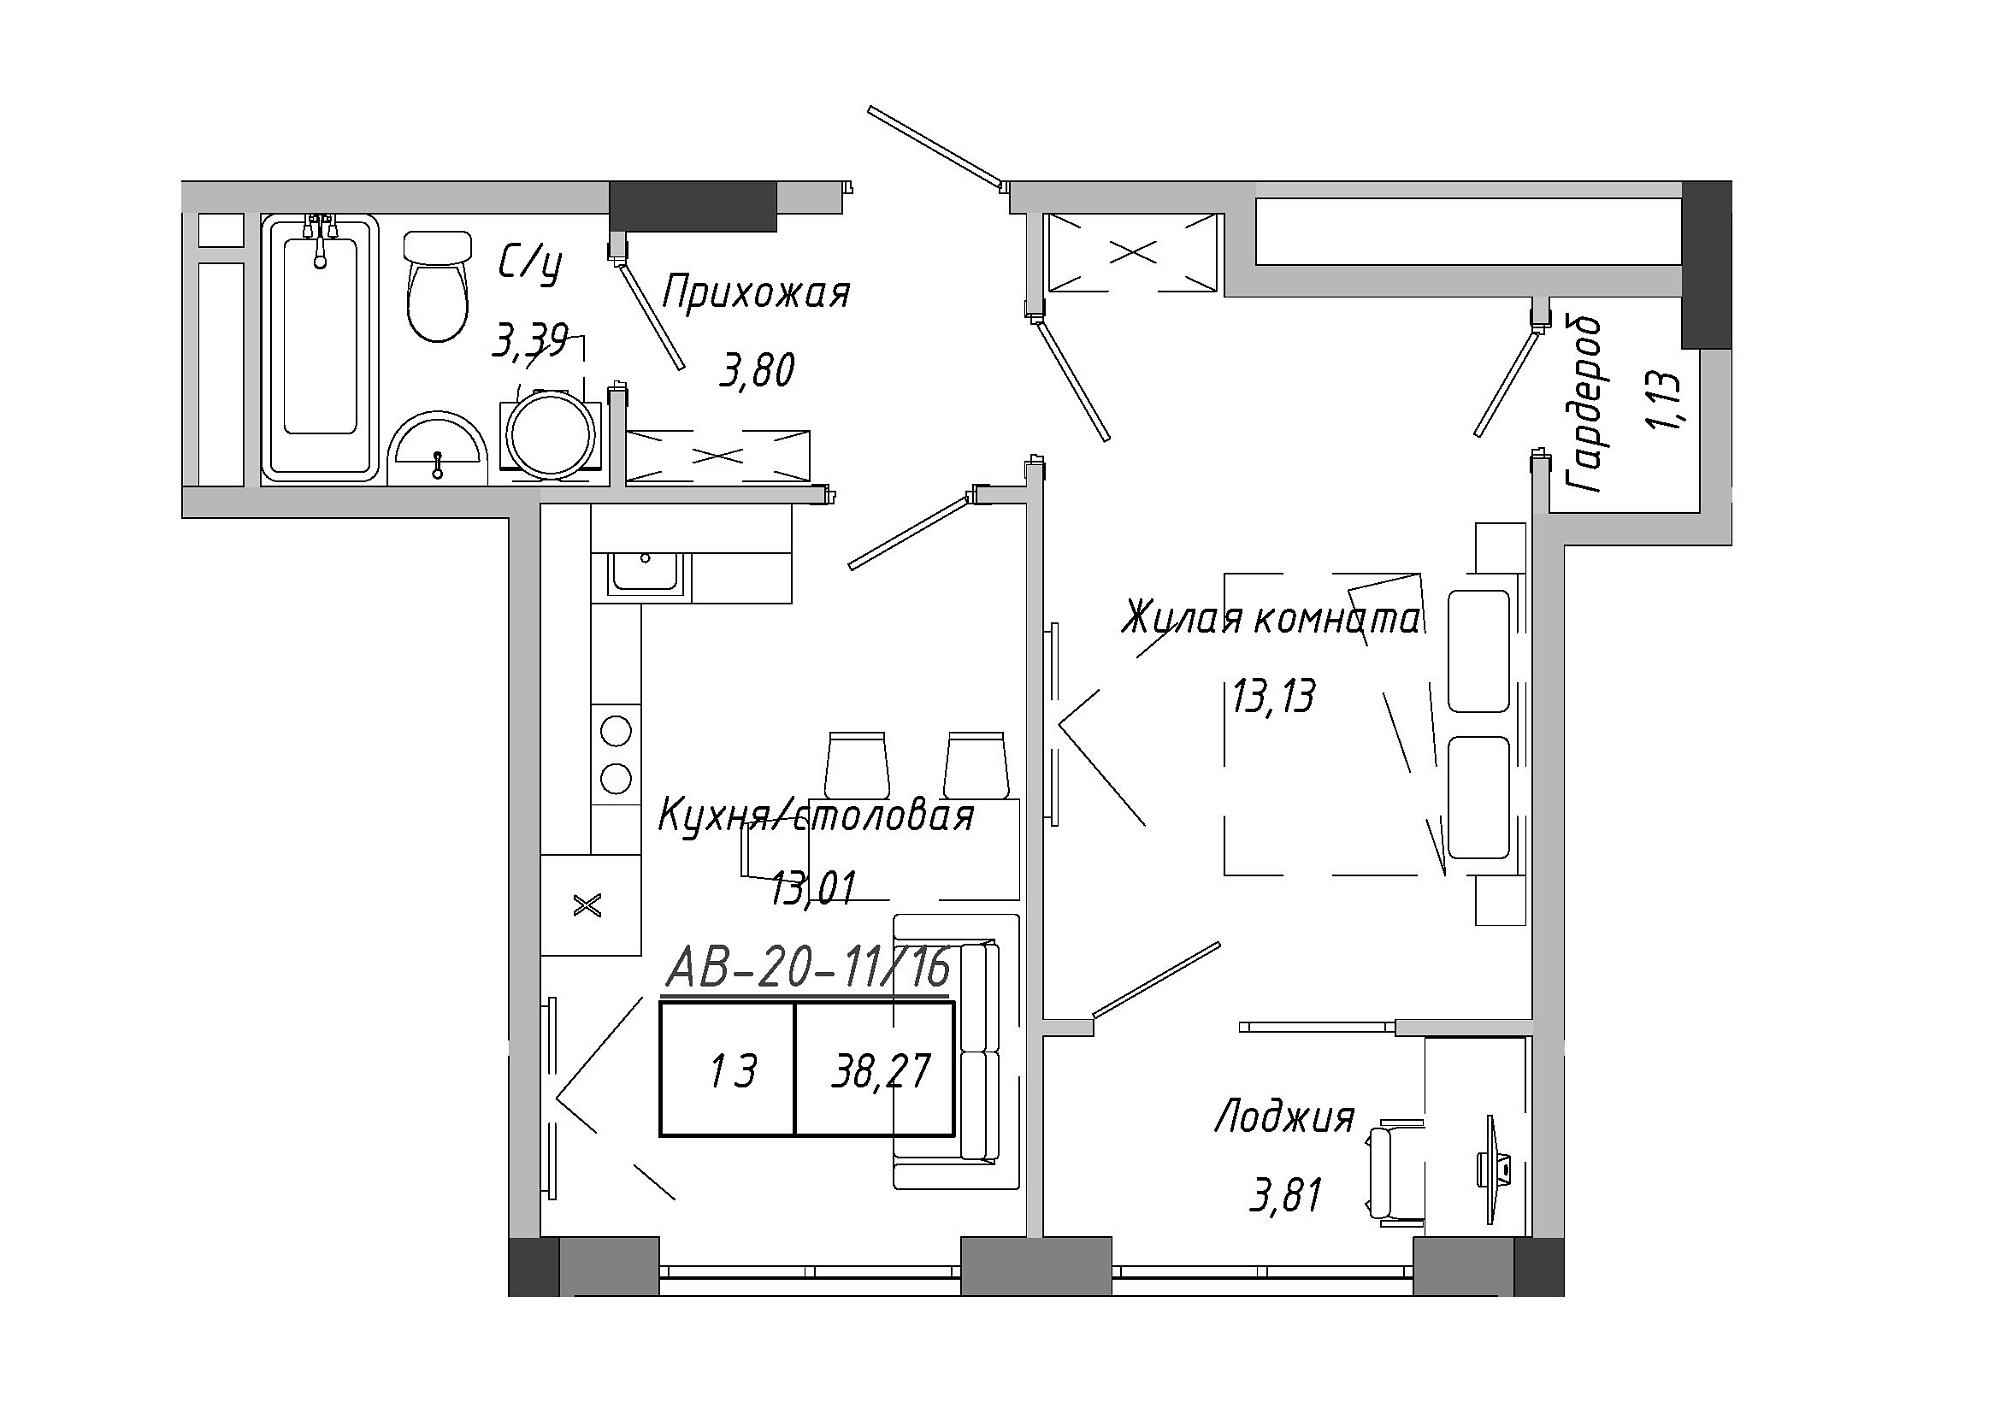 Планировка 1-к квартира площей 38.79м2, AB-20-11/00016.